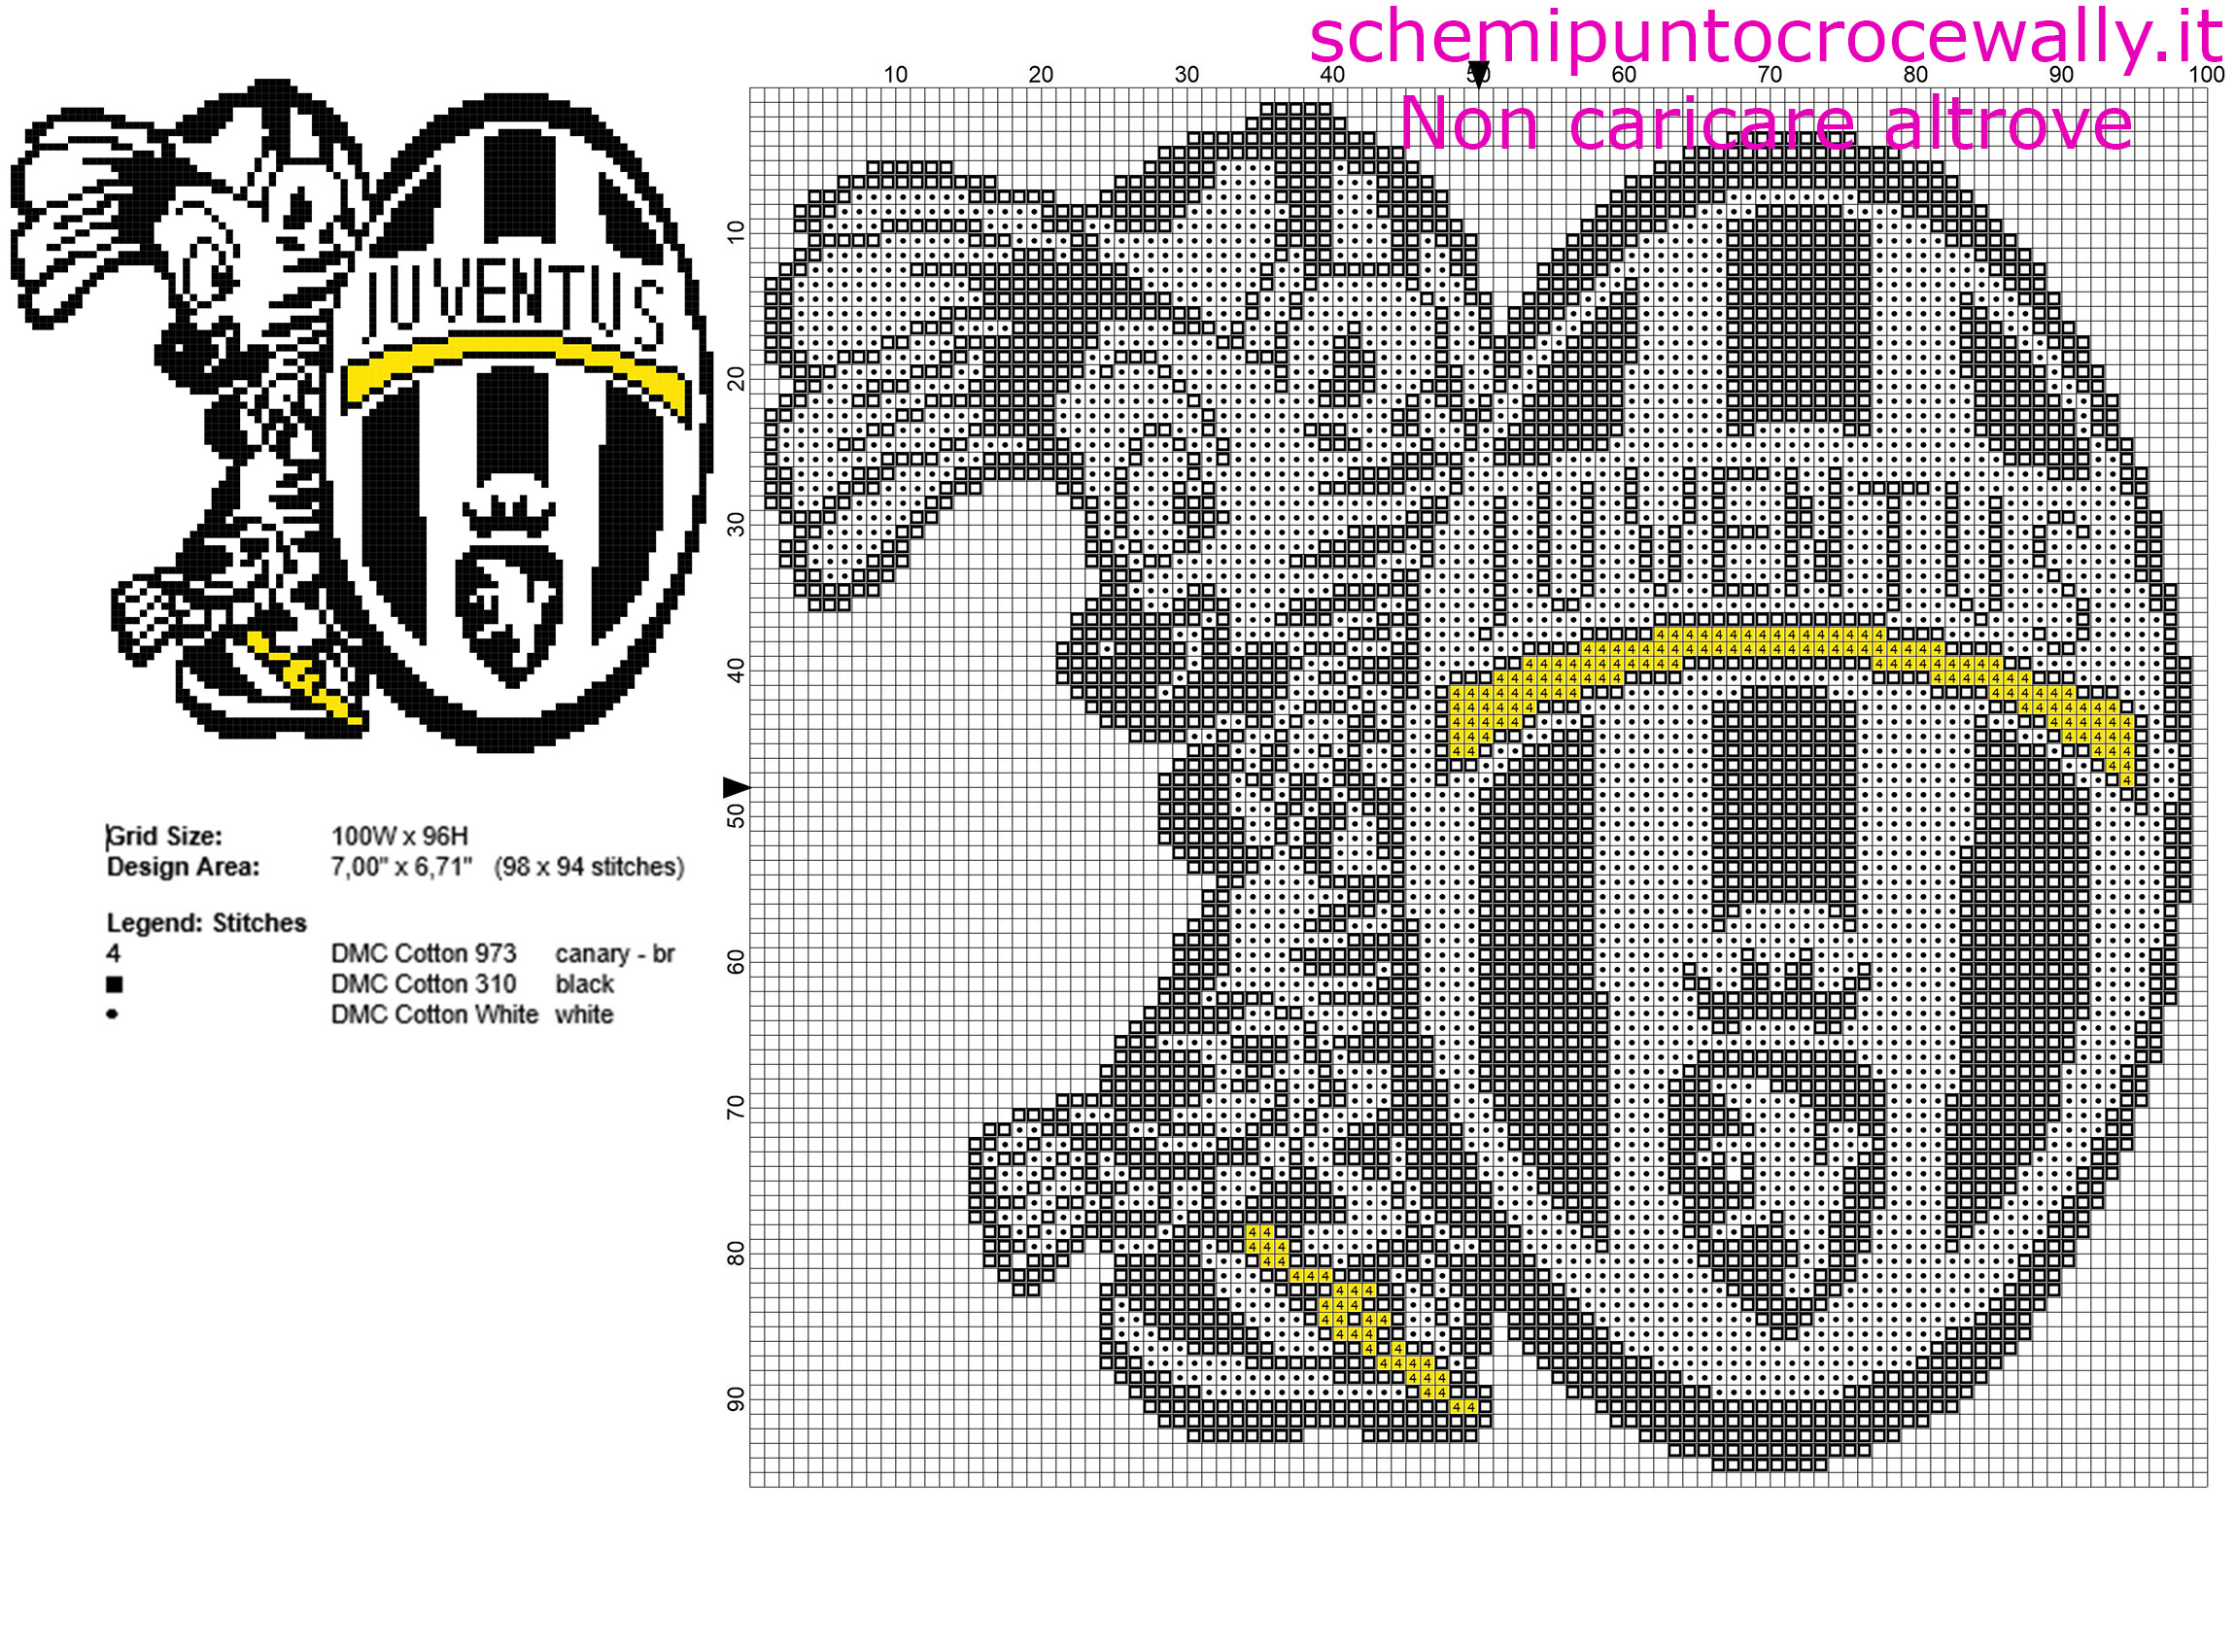 Cucciolo di zebra mascotte della Juventus piccolo schema punto croce